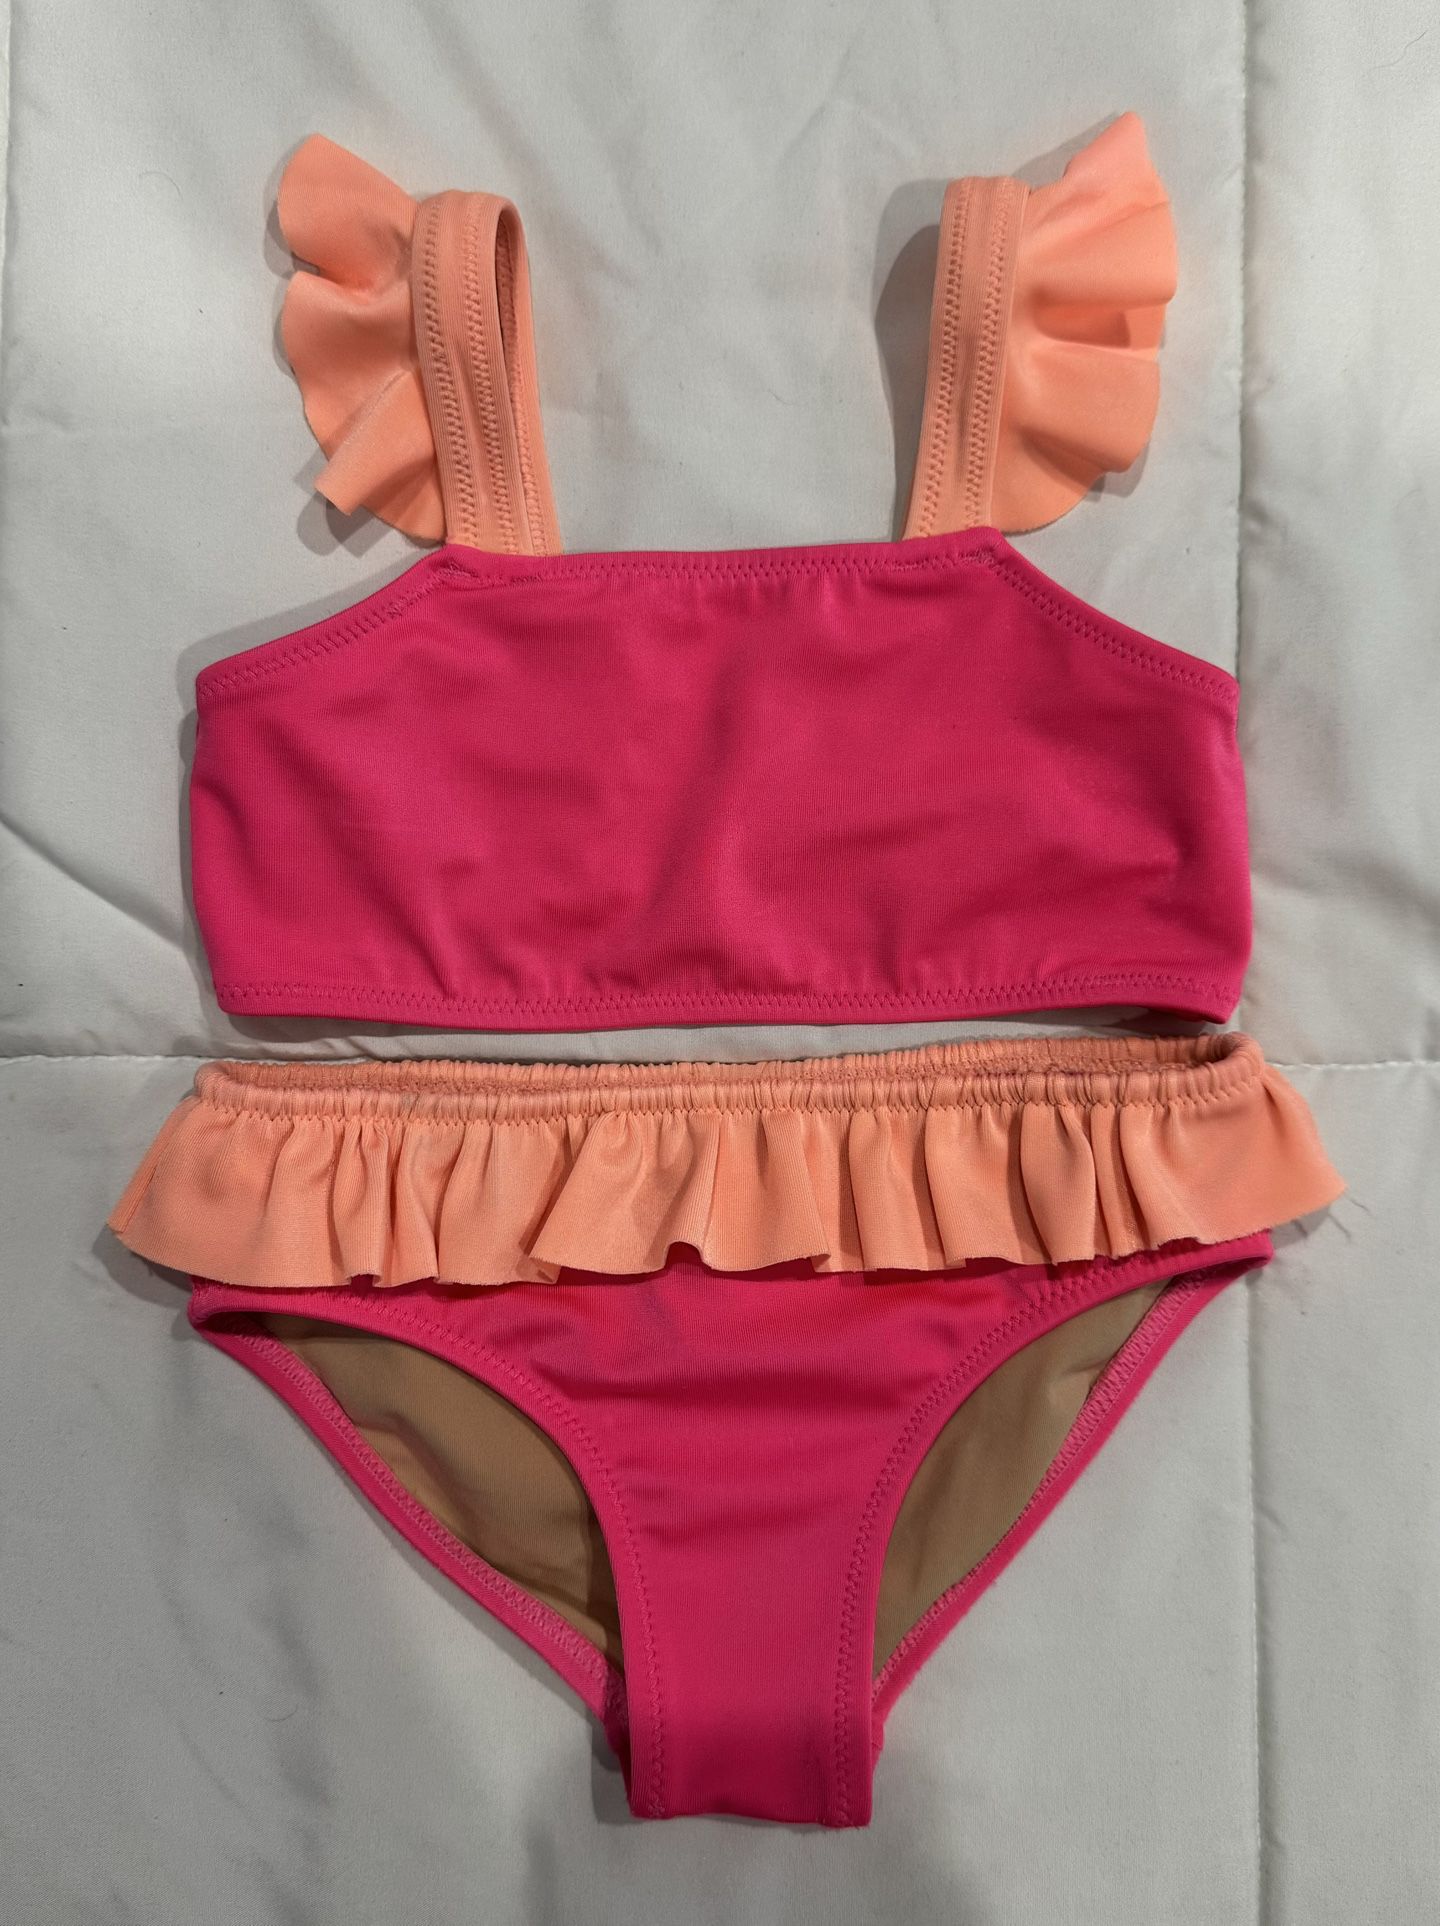 Toddler Girl Crewcuts Two Piece Bikini Size 3 Bright Pink/Orange 